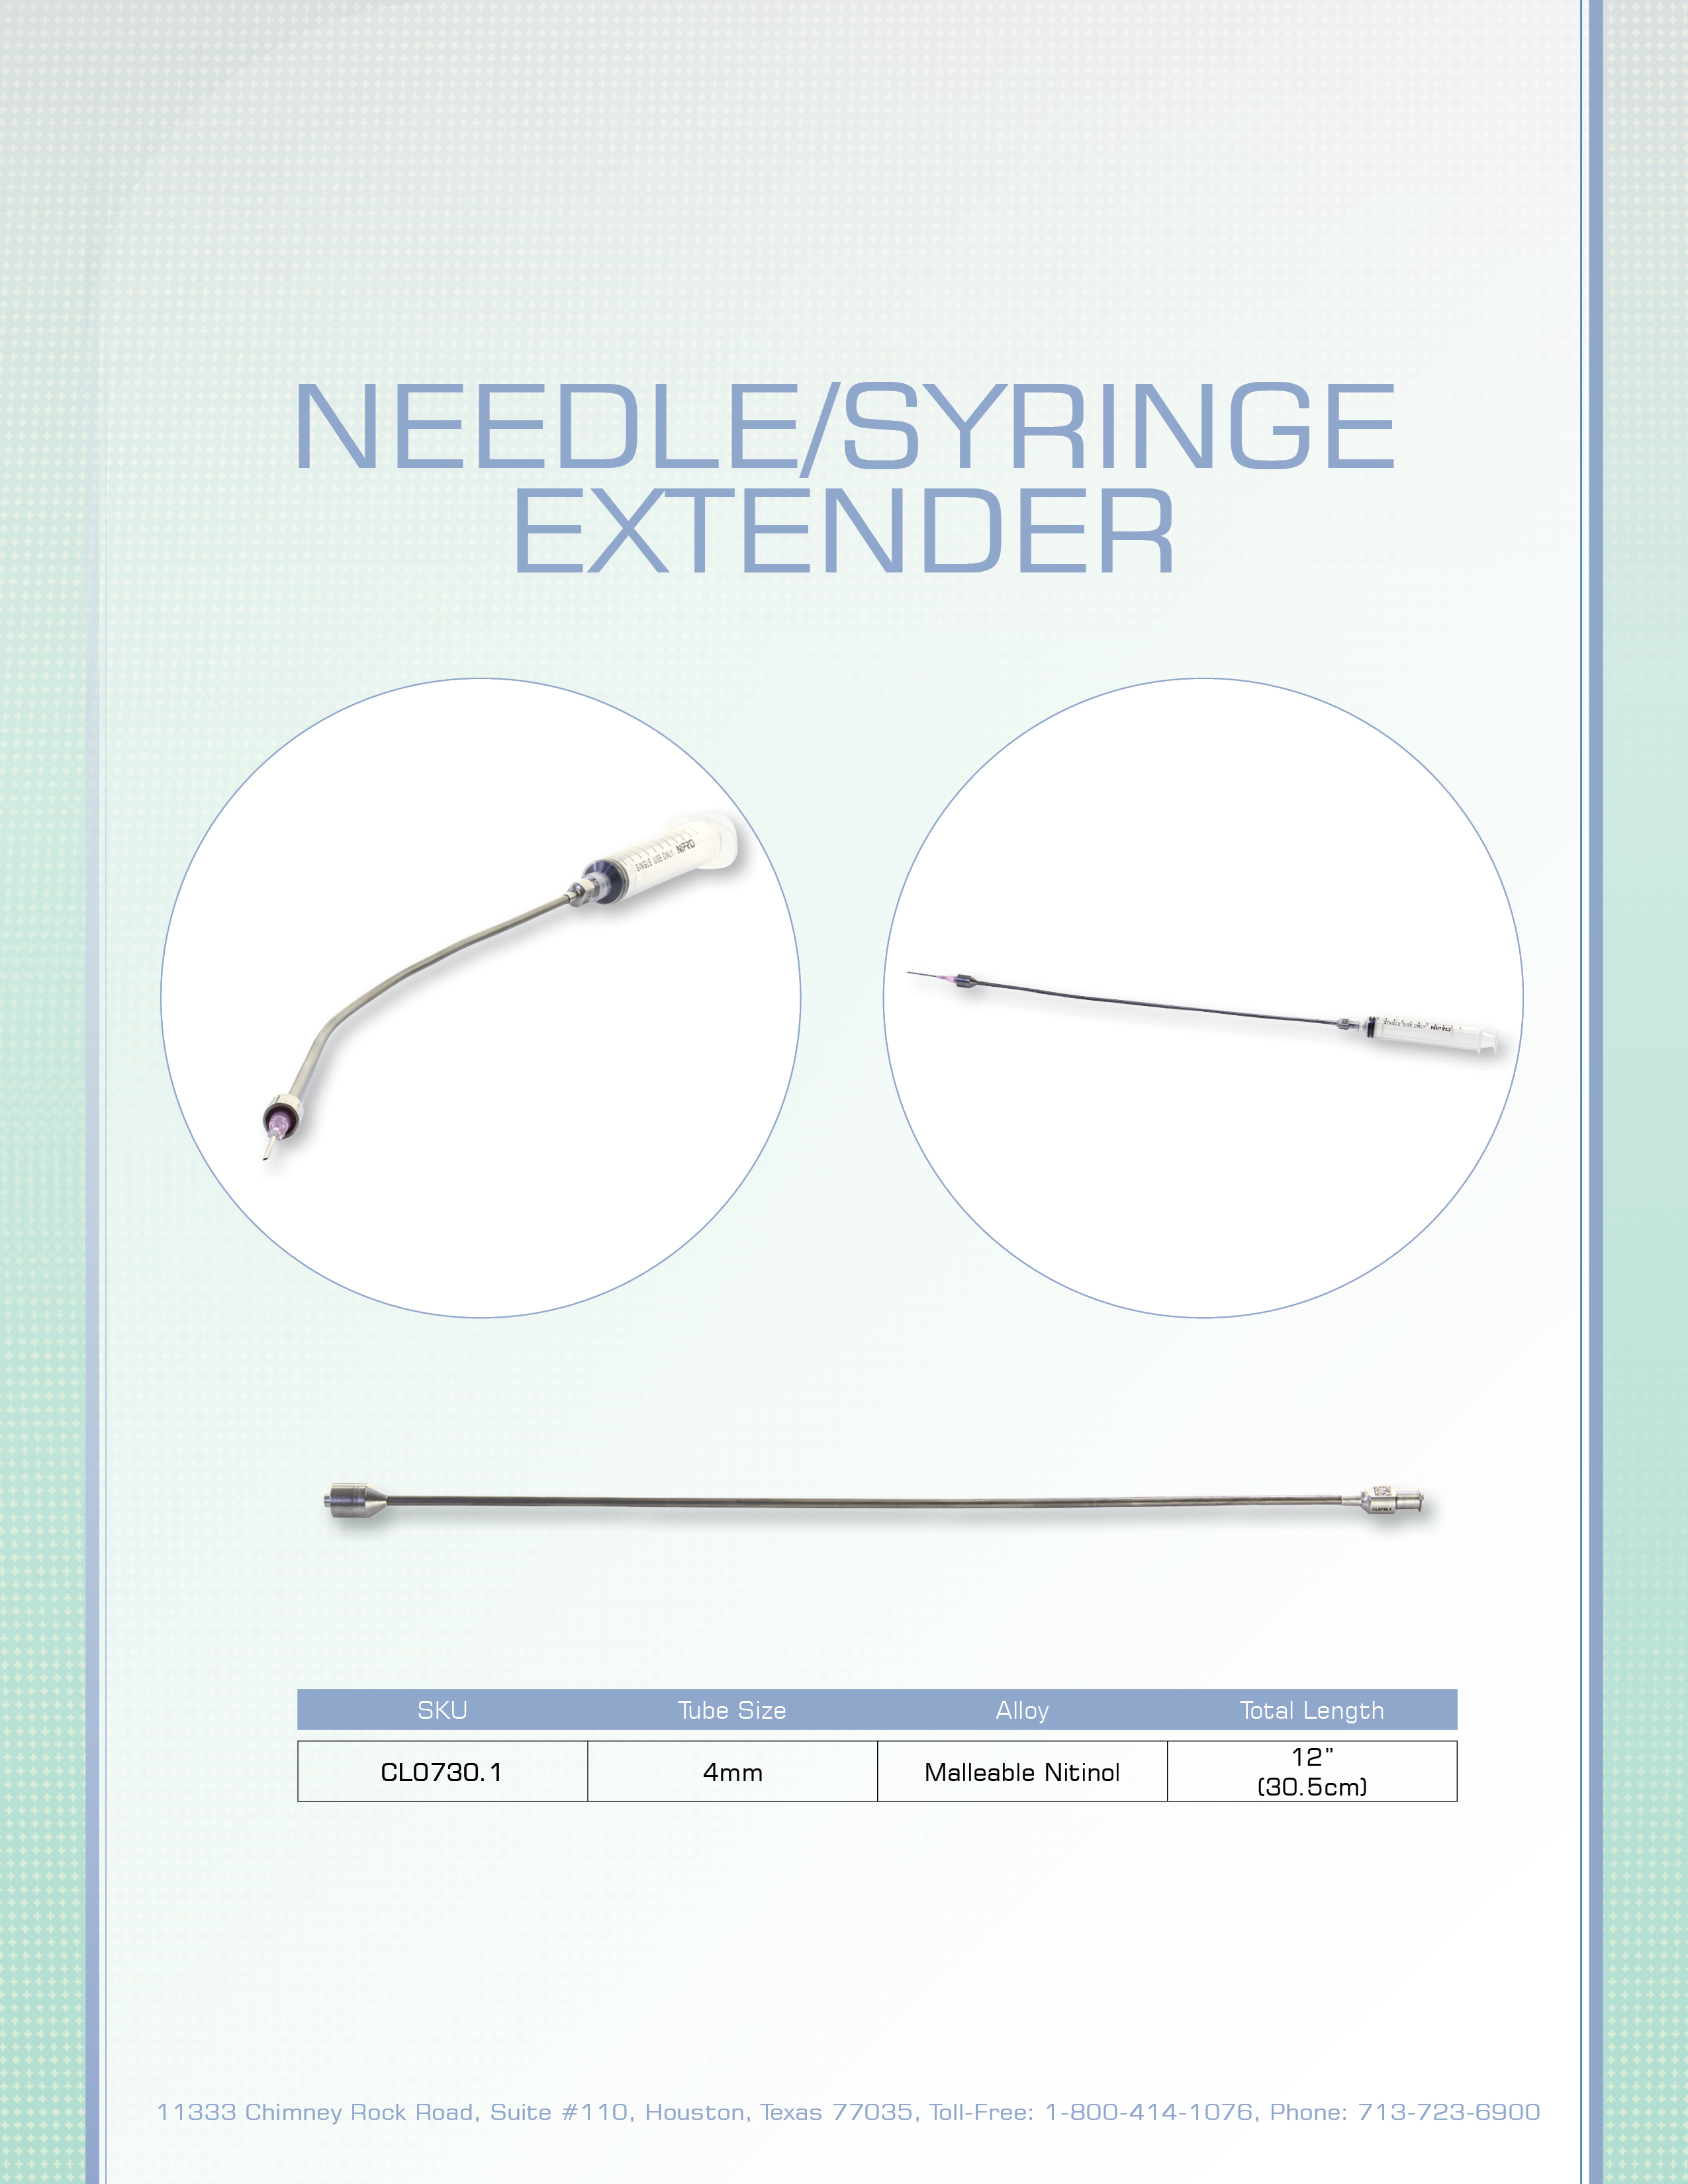 Needle Syringe Extender